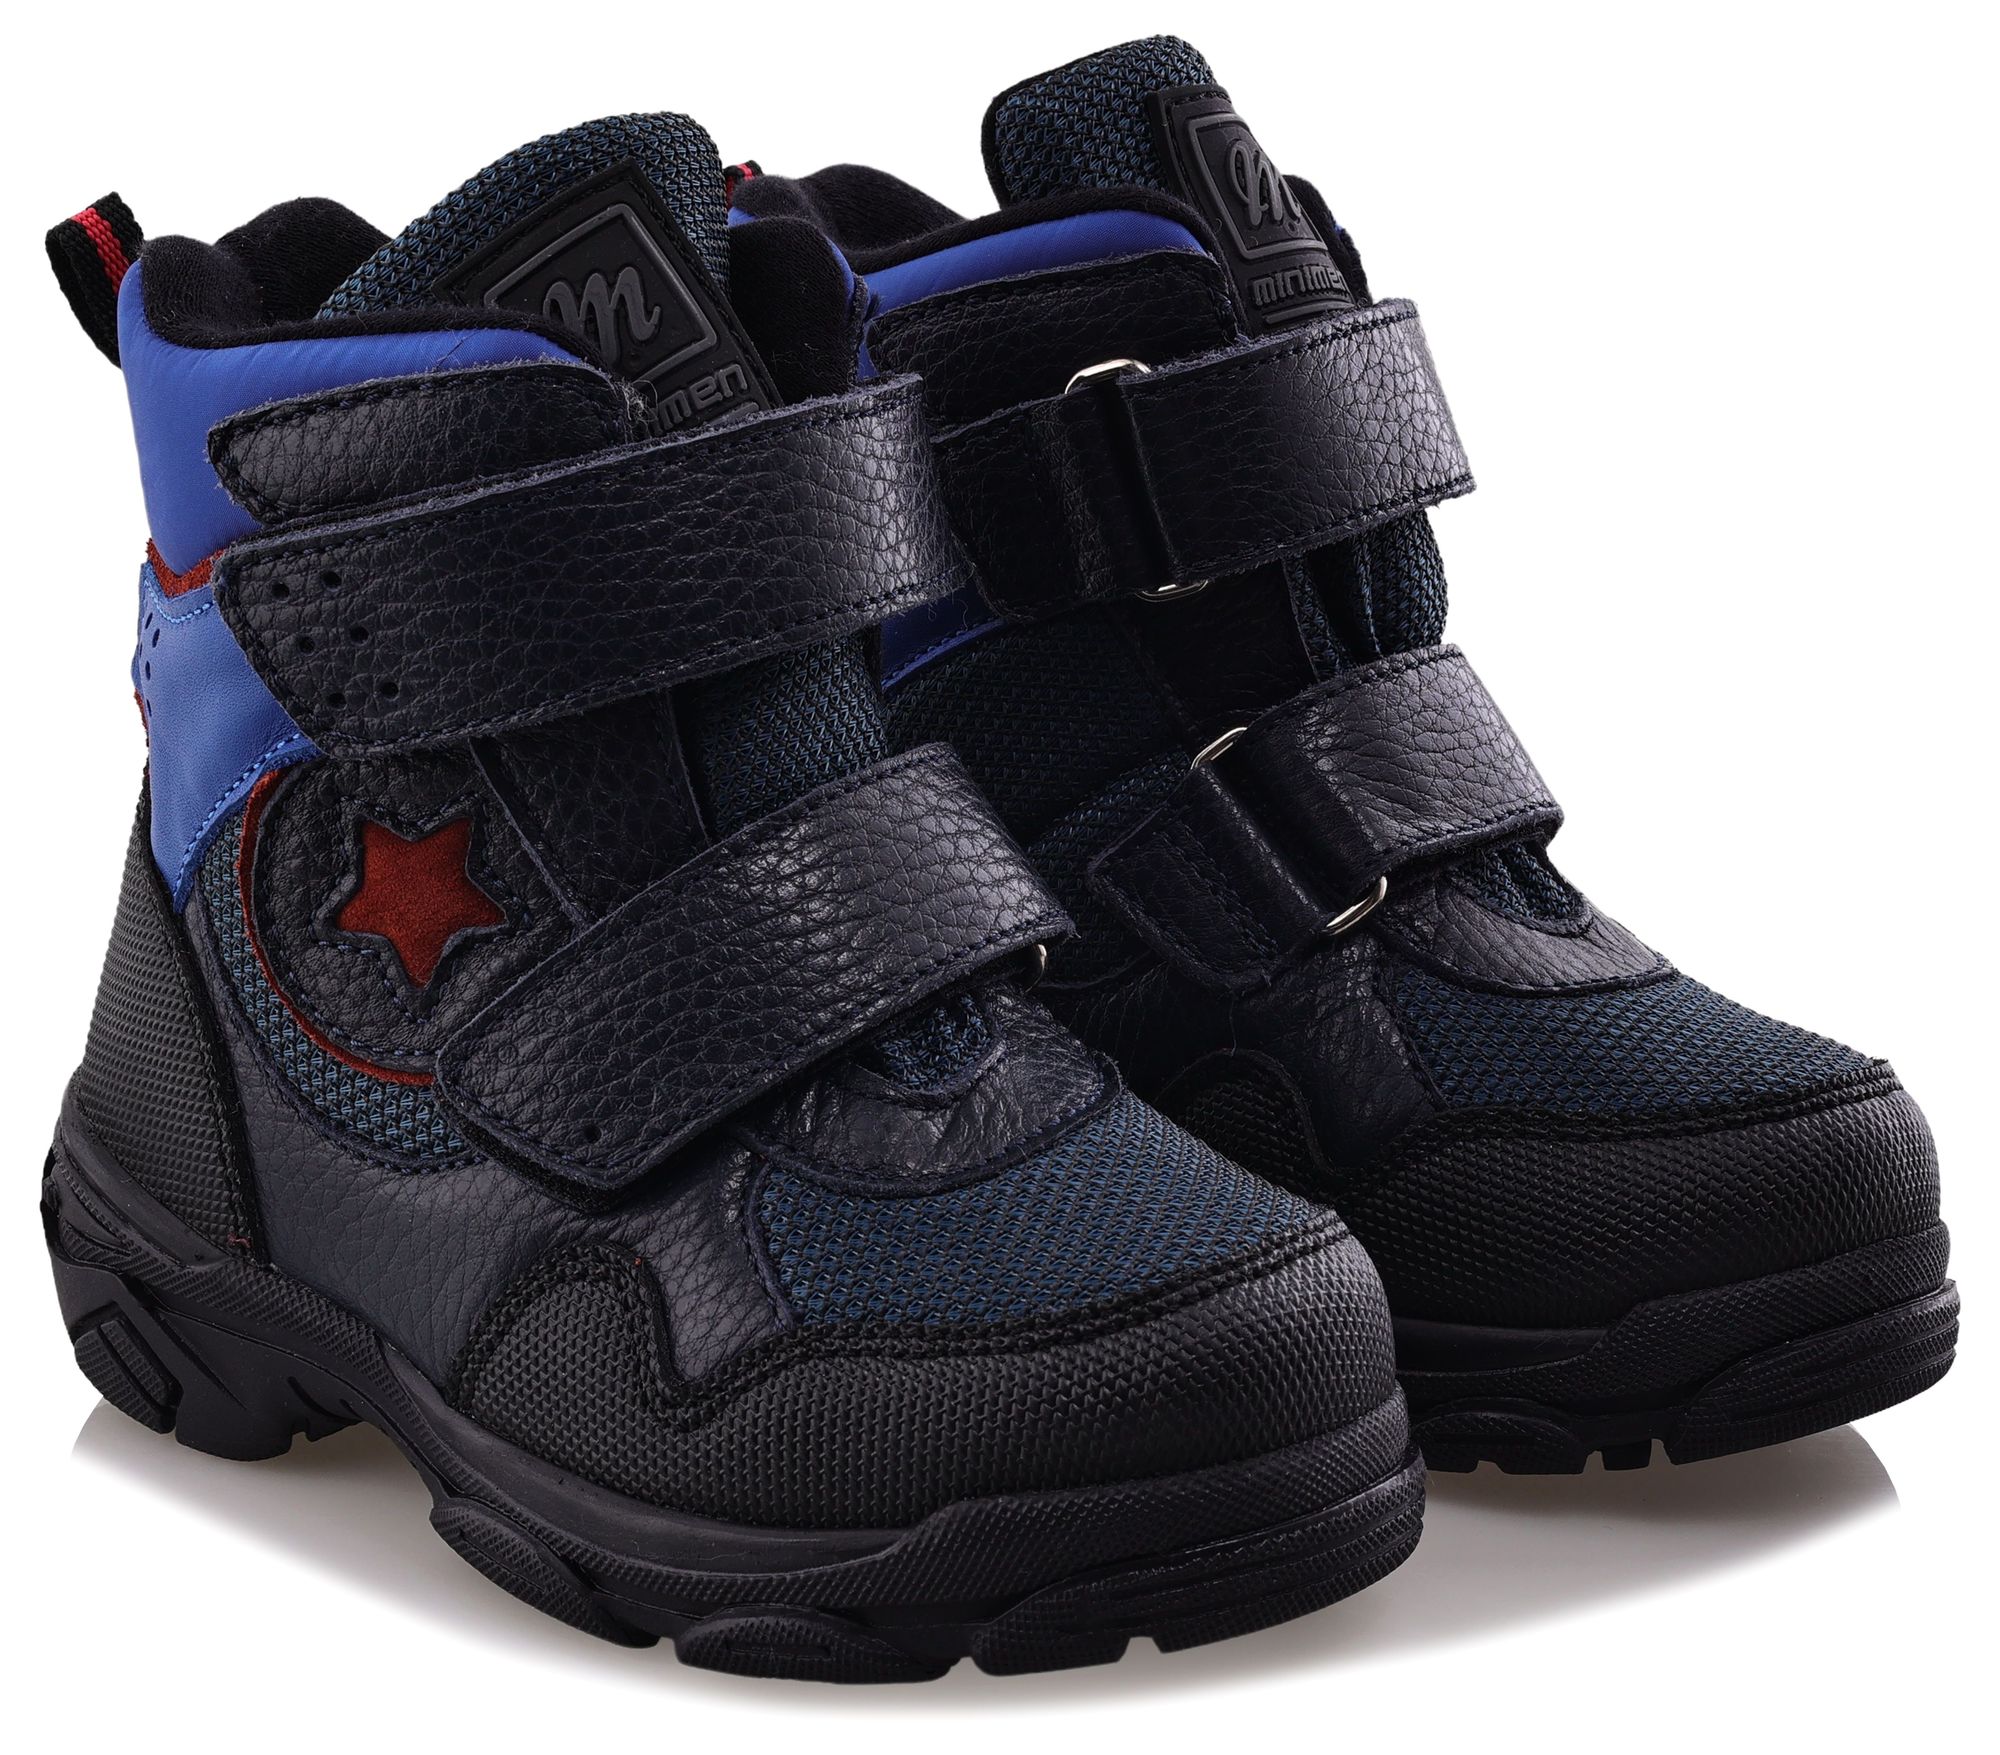 Ботинки Minimen для мальчиков, тёмно-синие, размер 24, 2658-52-23B-01